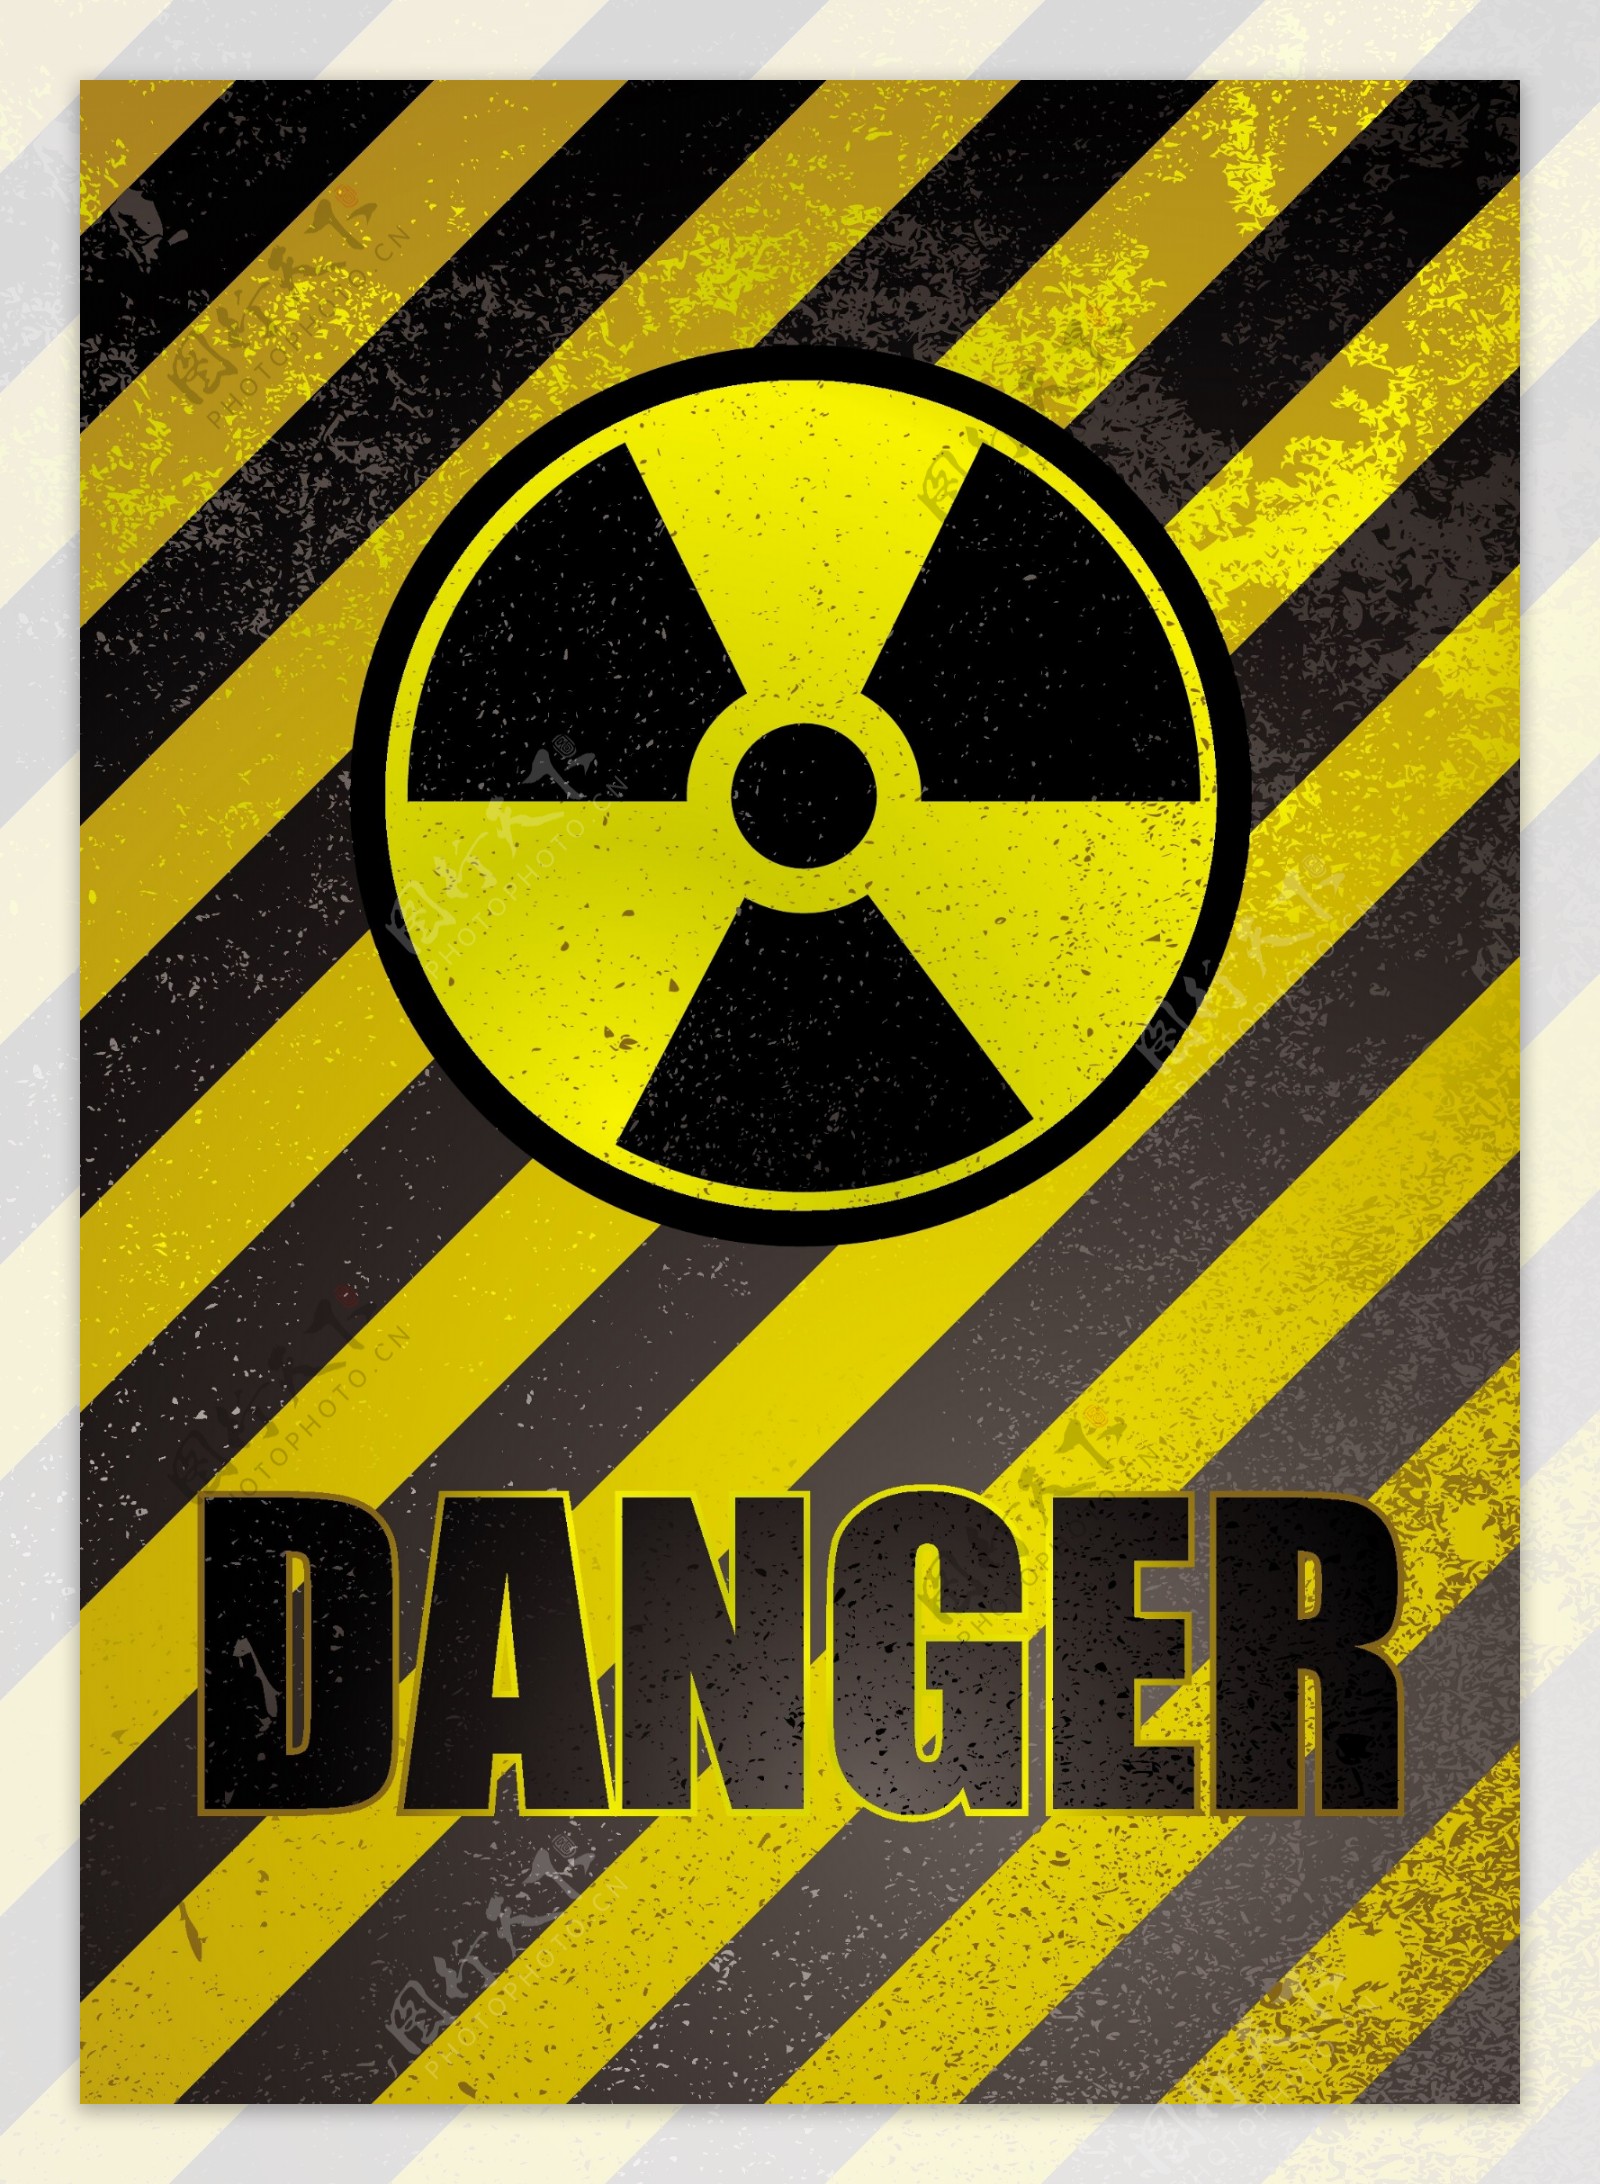 核危险警告牌矢量素材01